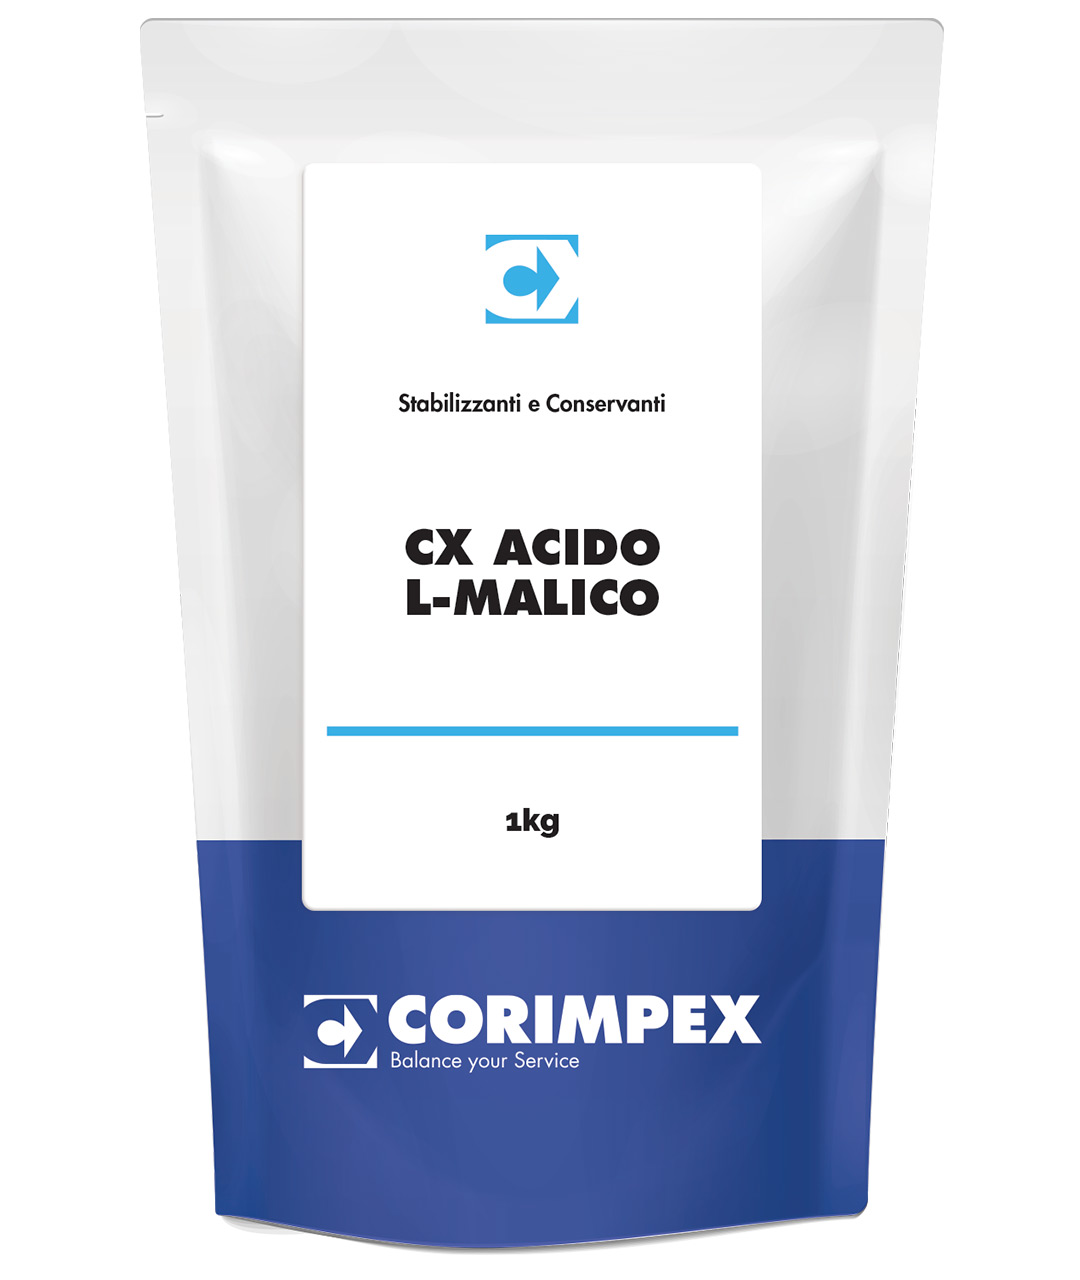 CX ACIDO L-MALICO